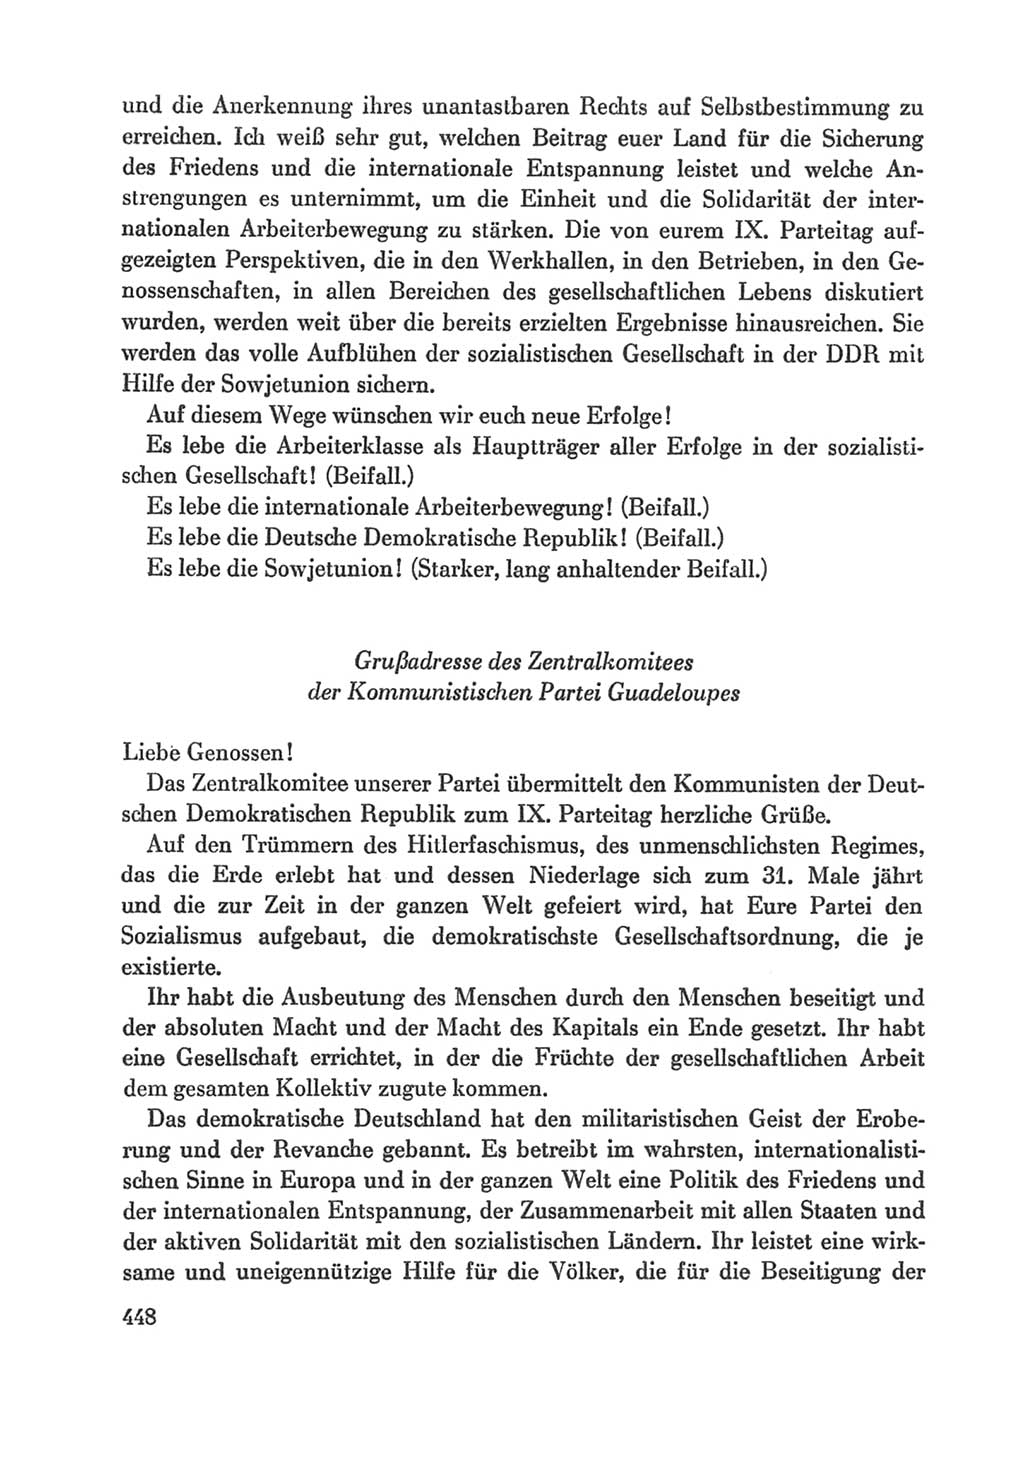 Protokoll der Verhandlungen des Ⅸ. Parteitages der Sozialistischen Einheitspartei Deutschlands (SED) [Deutsche Demokratische Republik (DDR)] 1976, Band 1, Seite 448 (Prot. Verh. Ⅸ. PT SED DDR 1976, Bd. 1, S. 448)